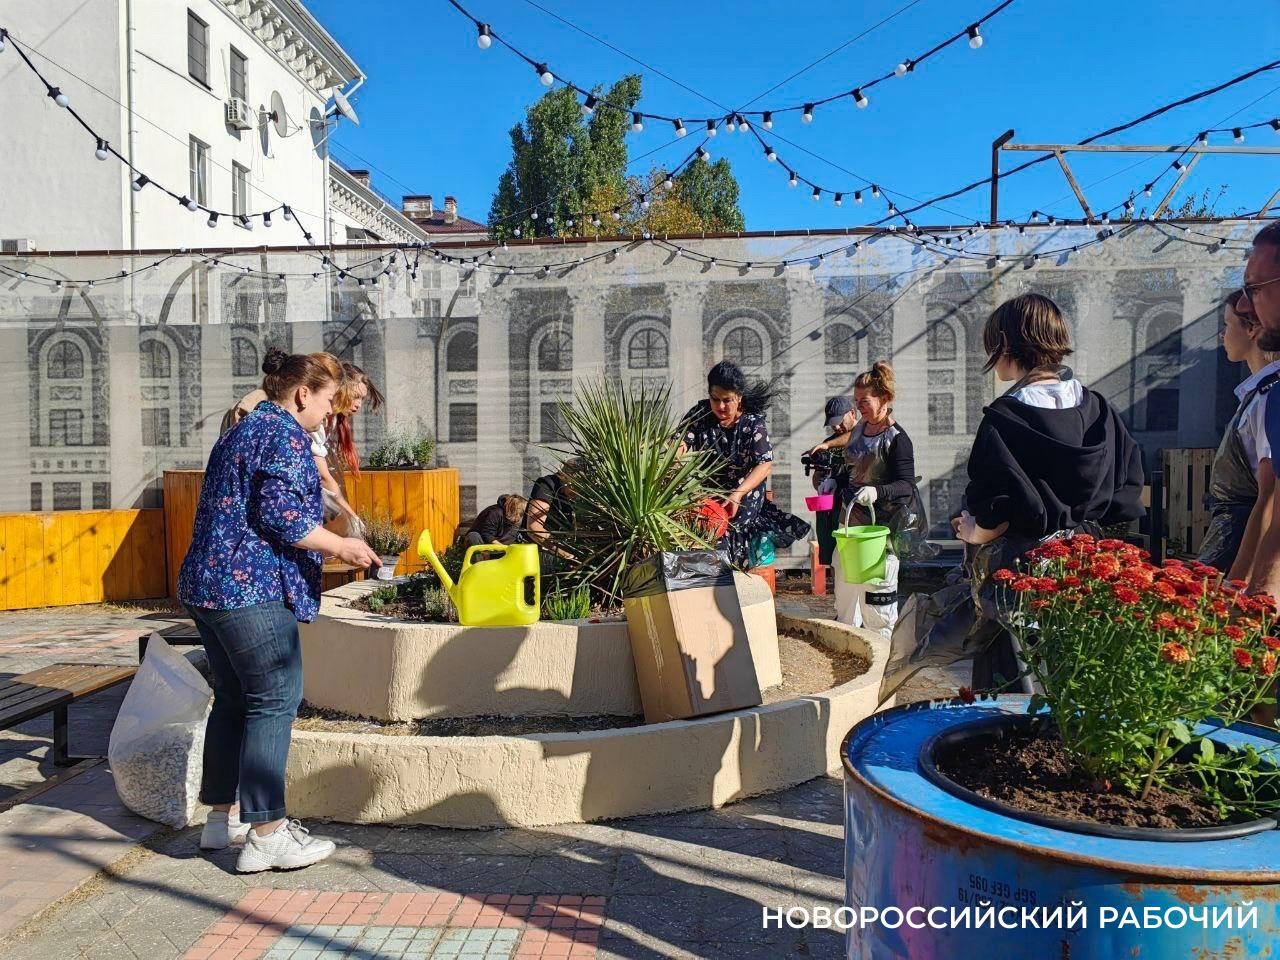 В Новороссийске на заброшенных участках возле Доски почёта сделают культурно и красиво